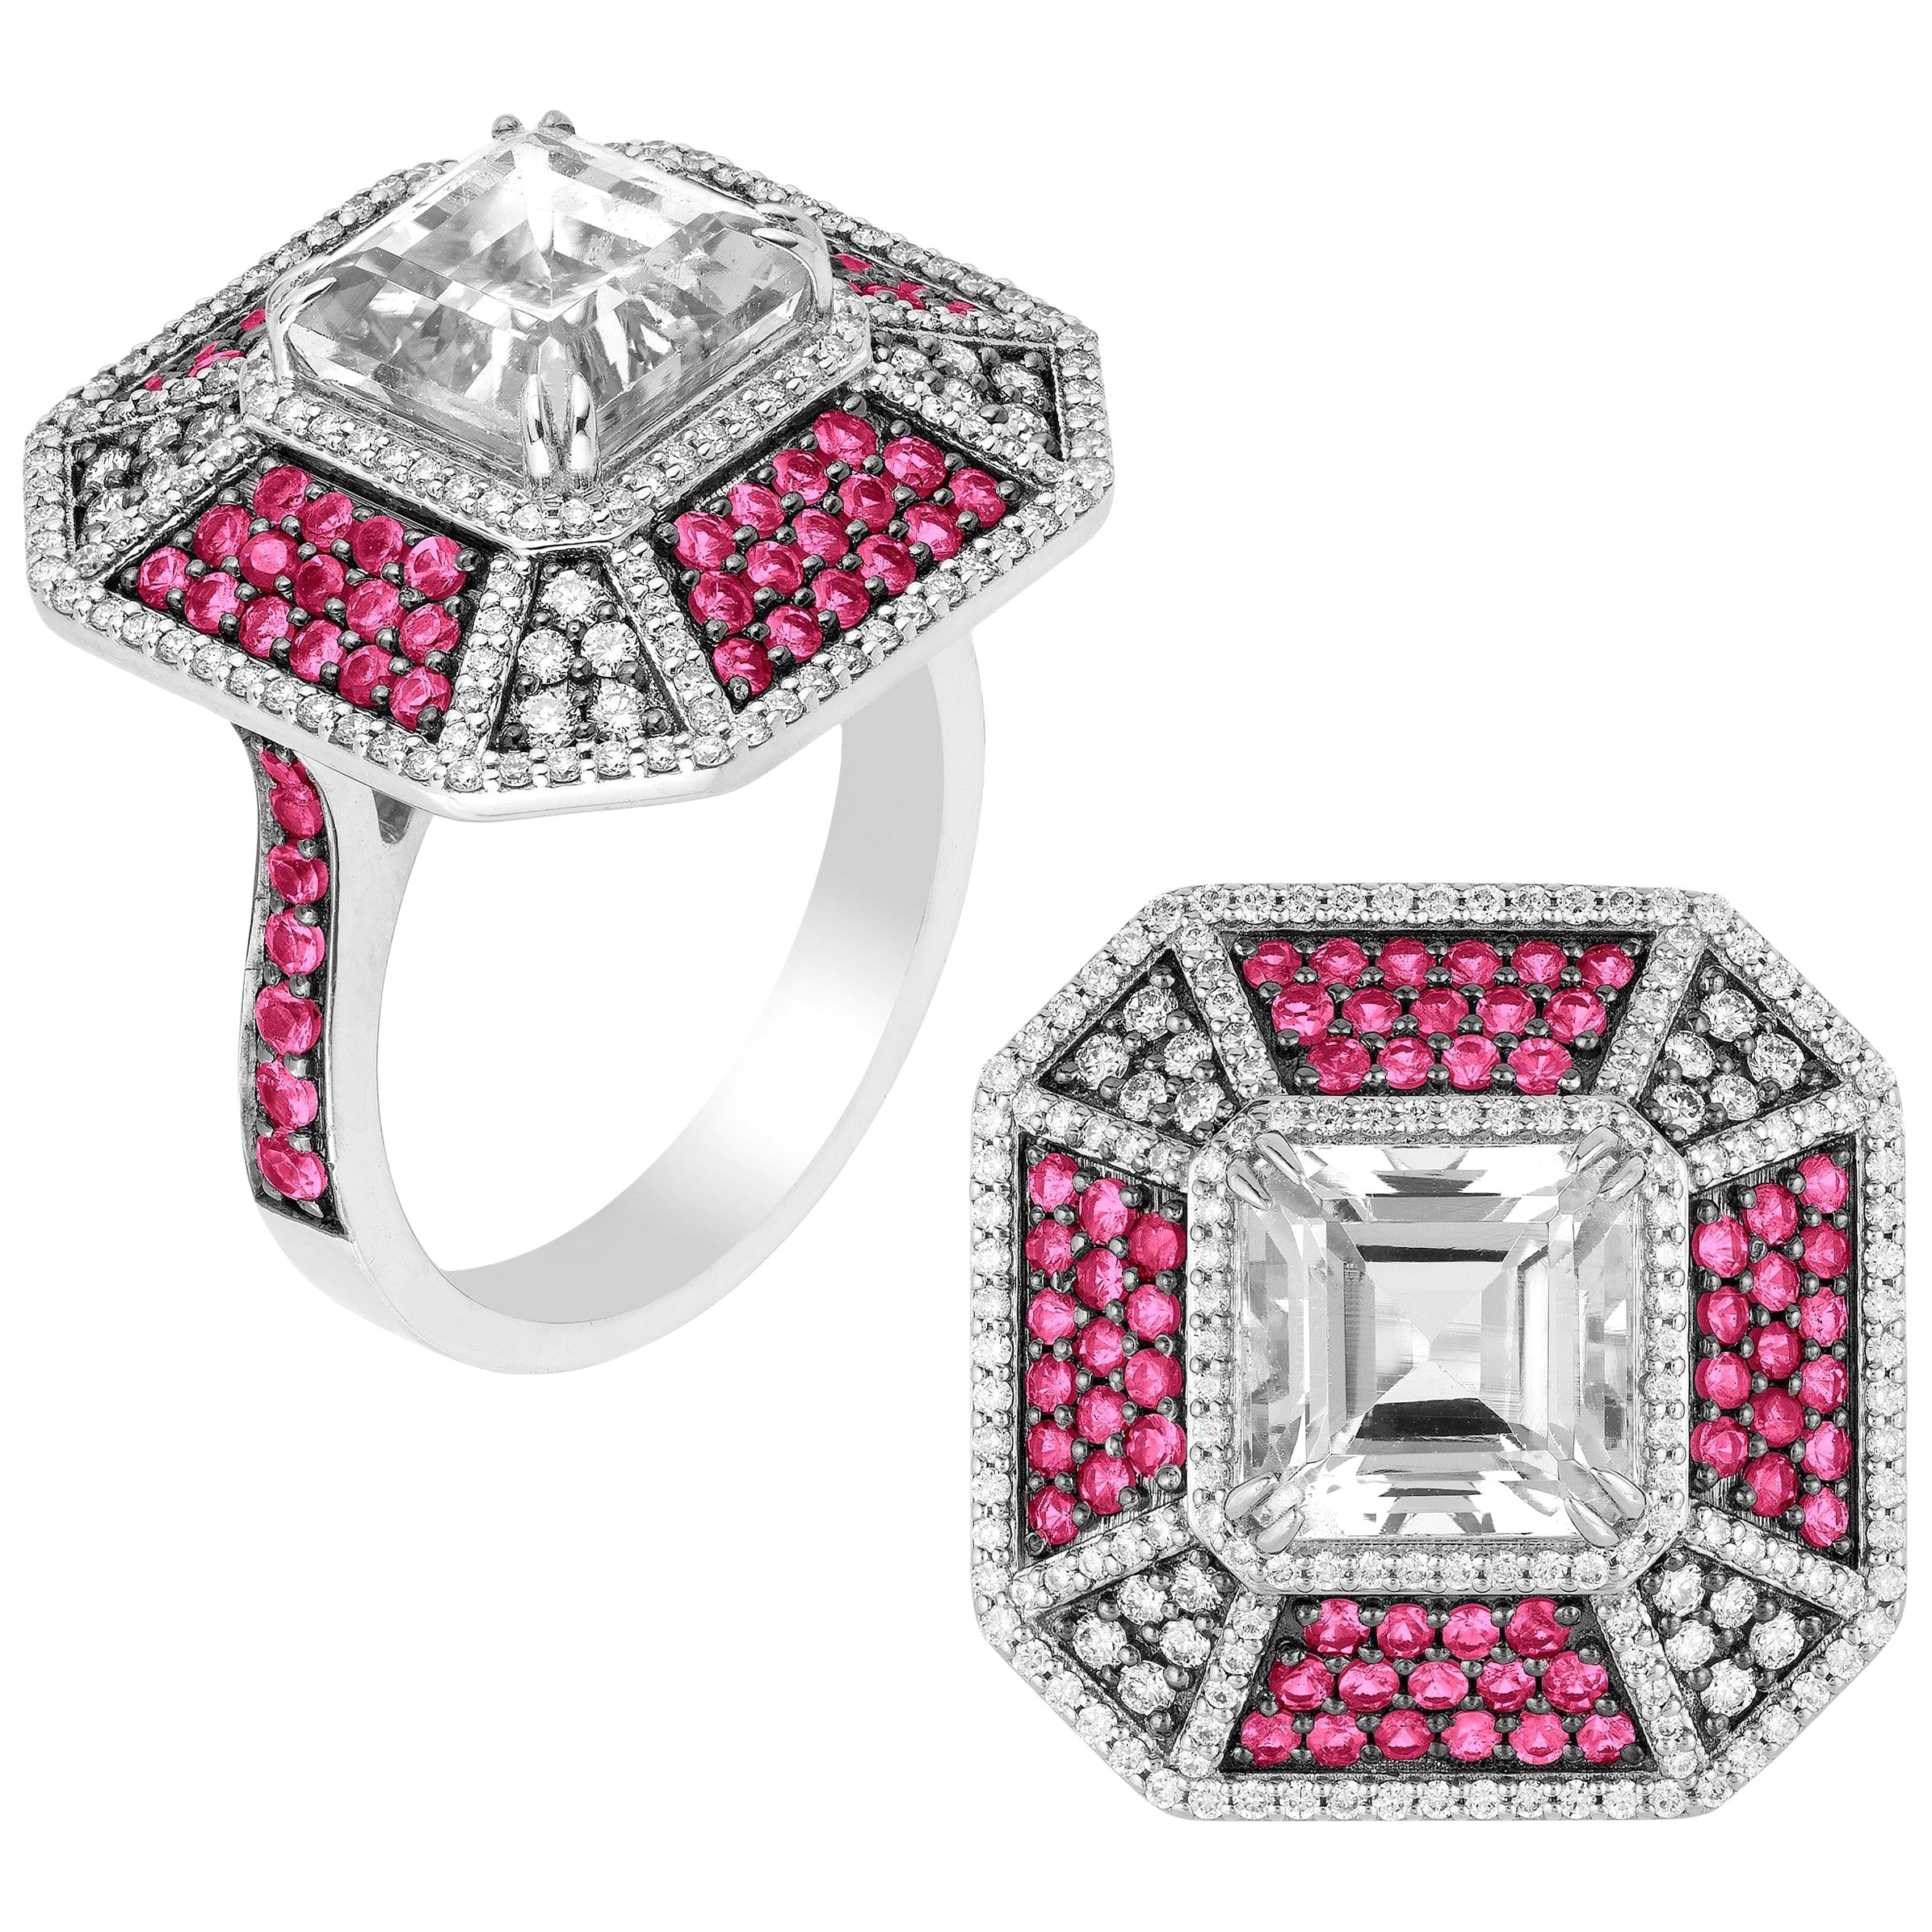 Bague Goshwara octogonale en rubis et cristal de roche avec diamants